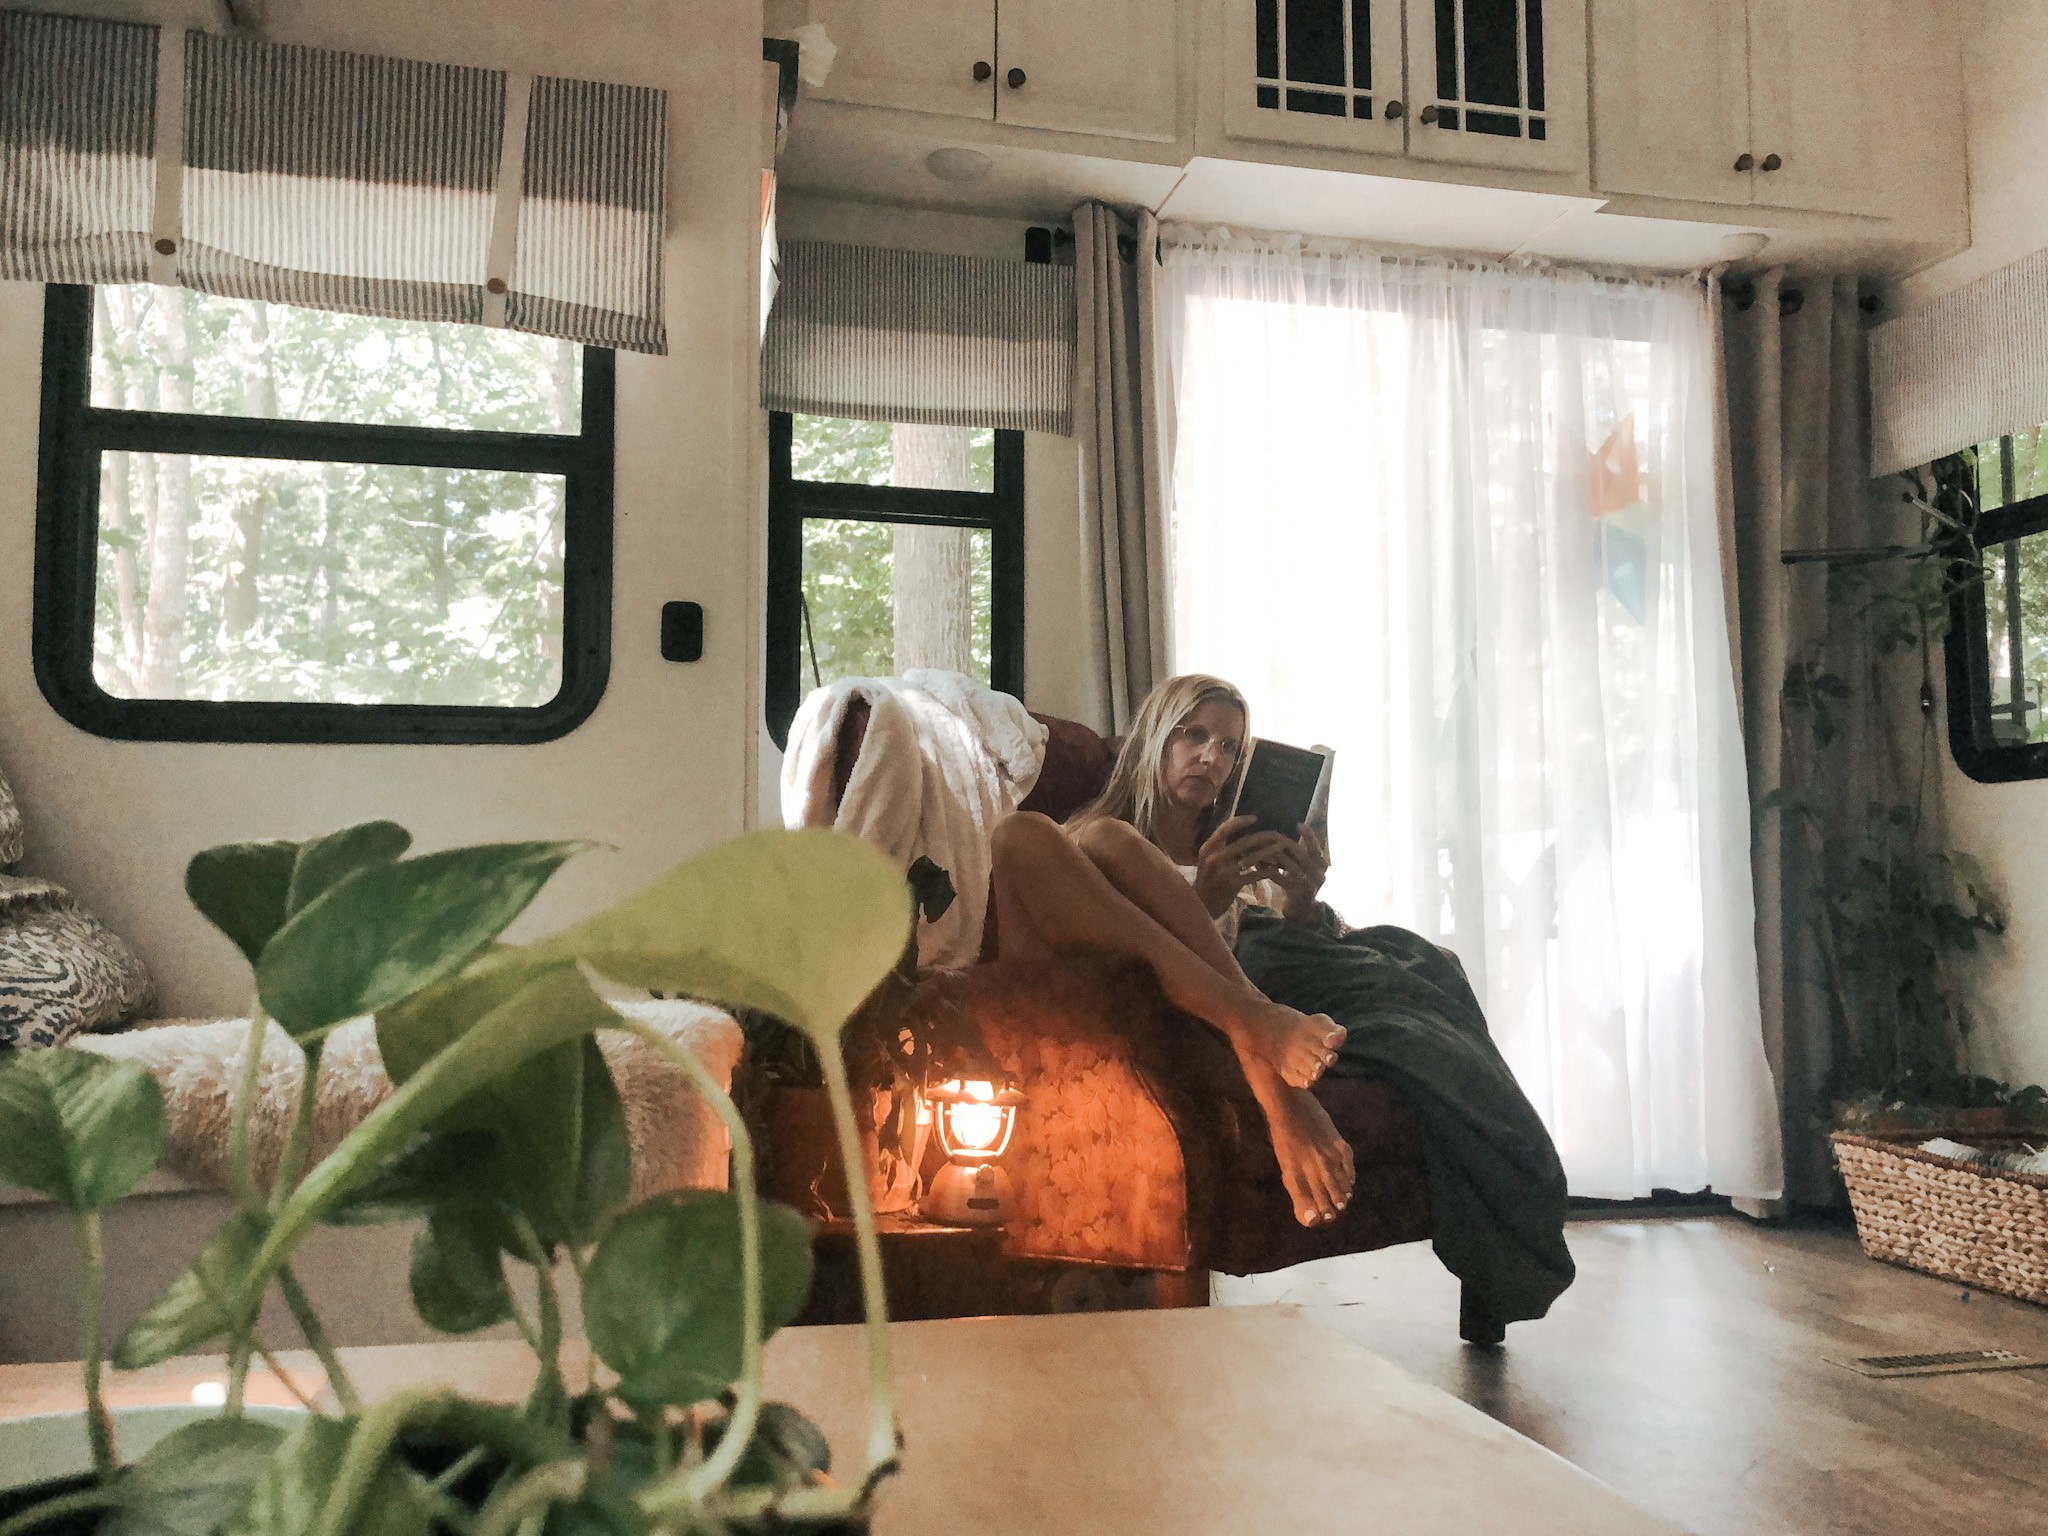 The living room inside the JC & BÄRBEL BARRINGER family's 2018 KZ Durango Gold fifth wheel